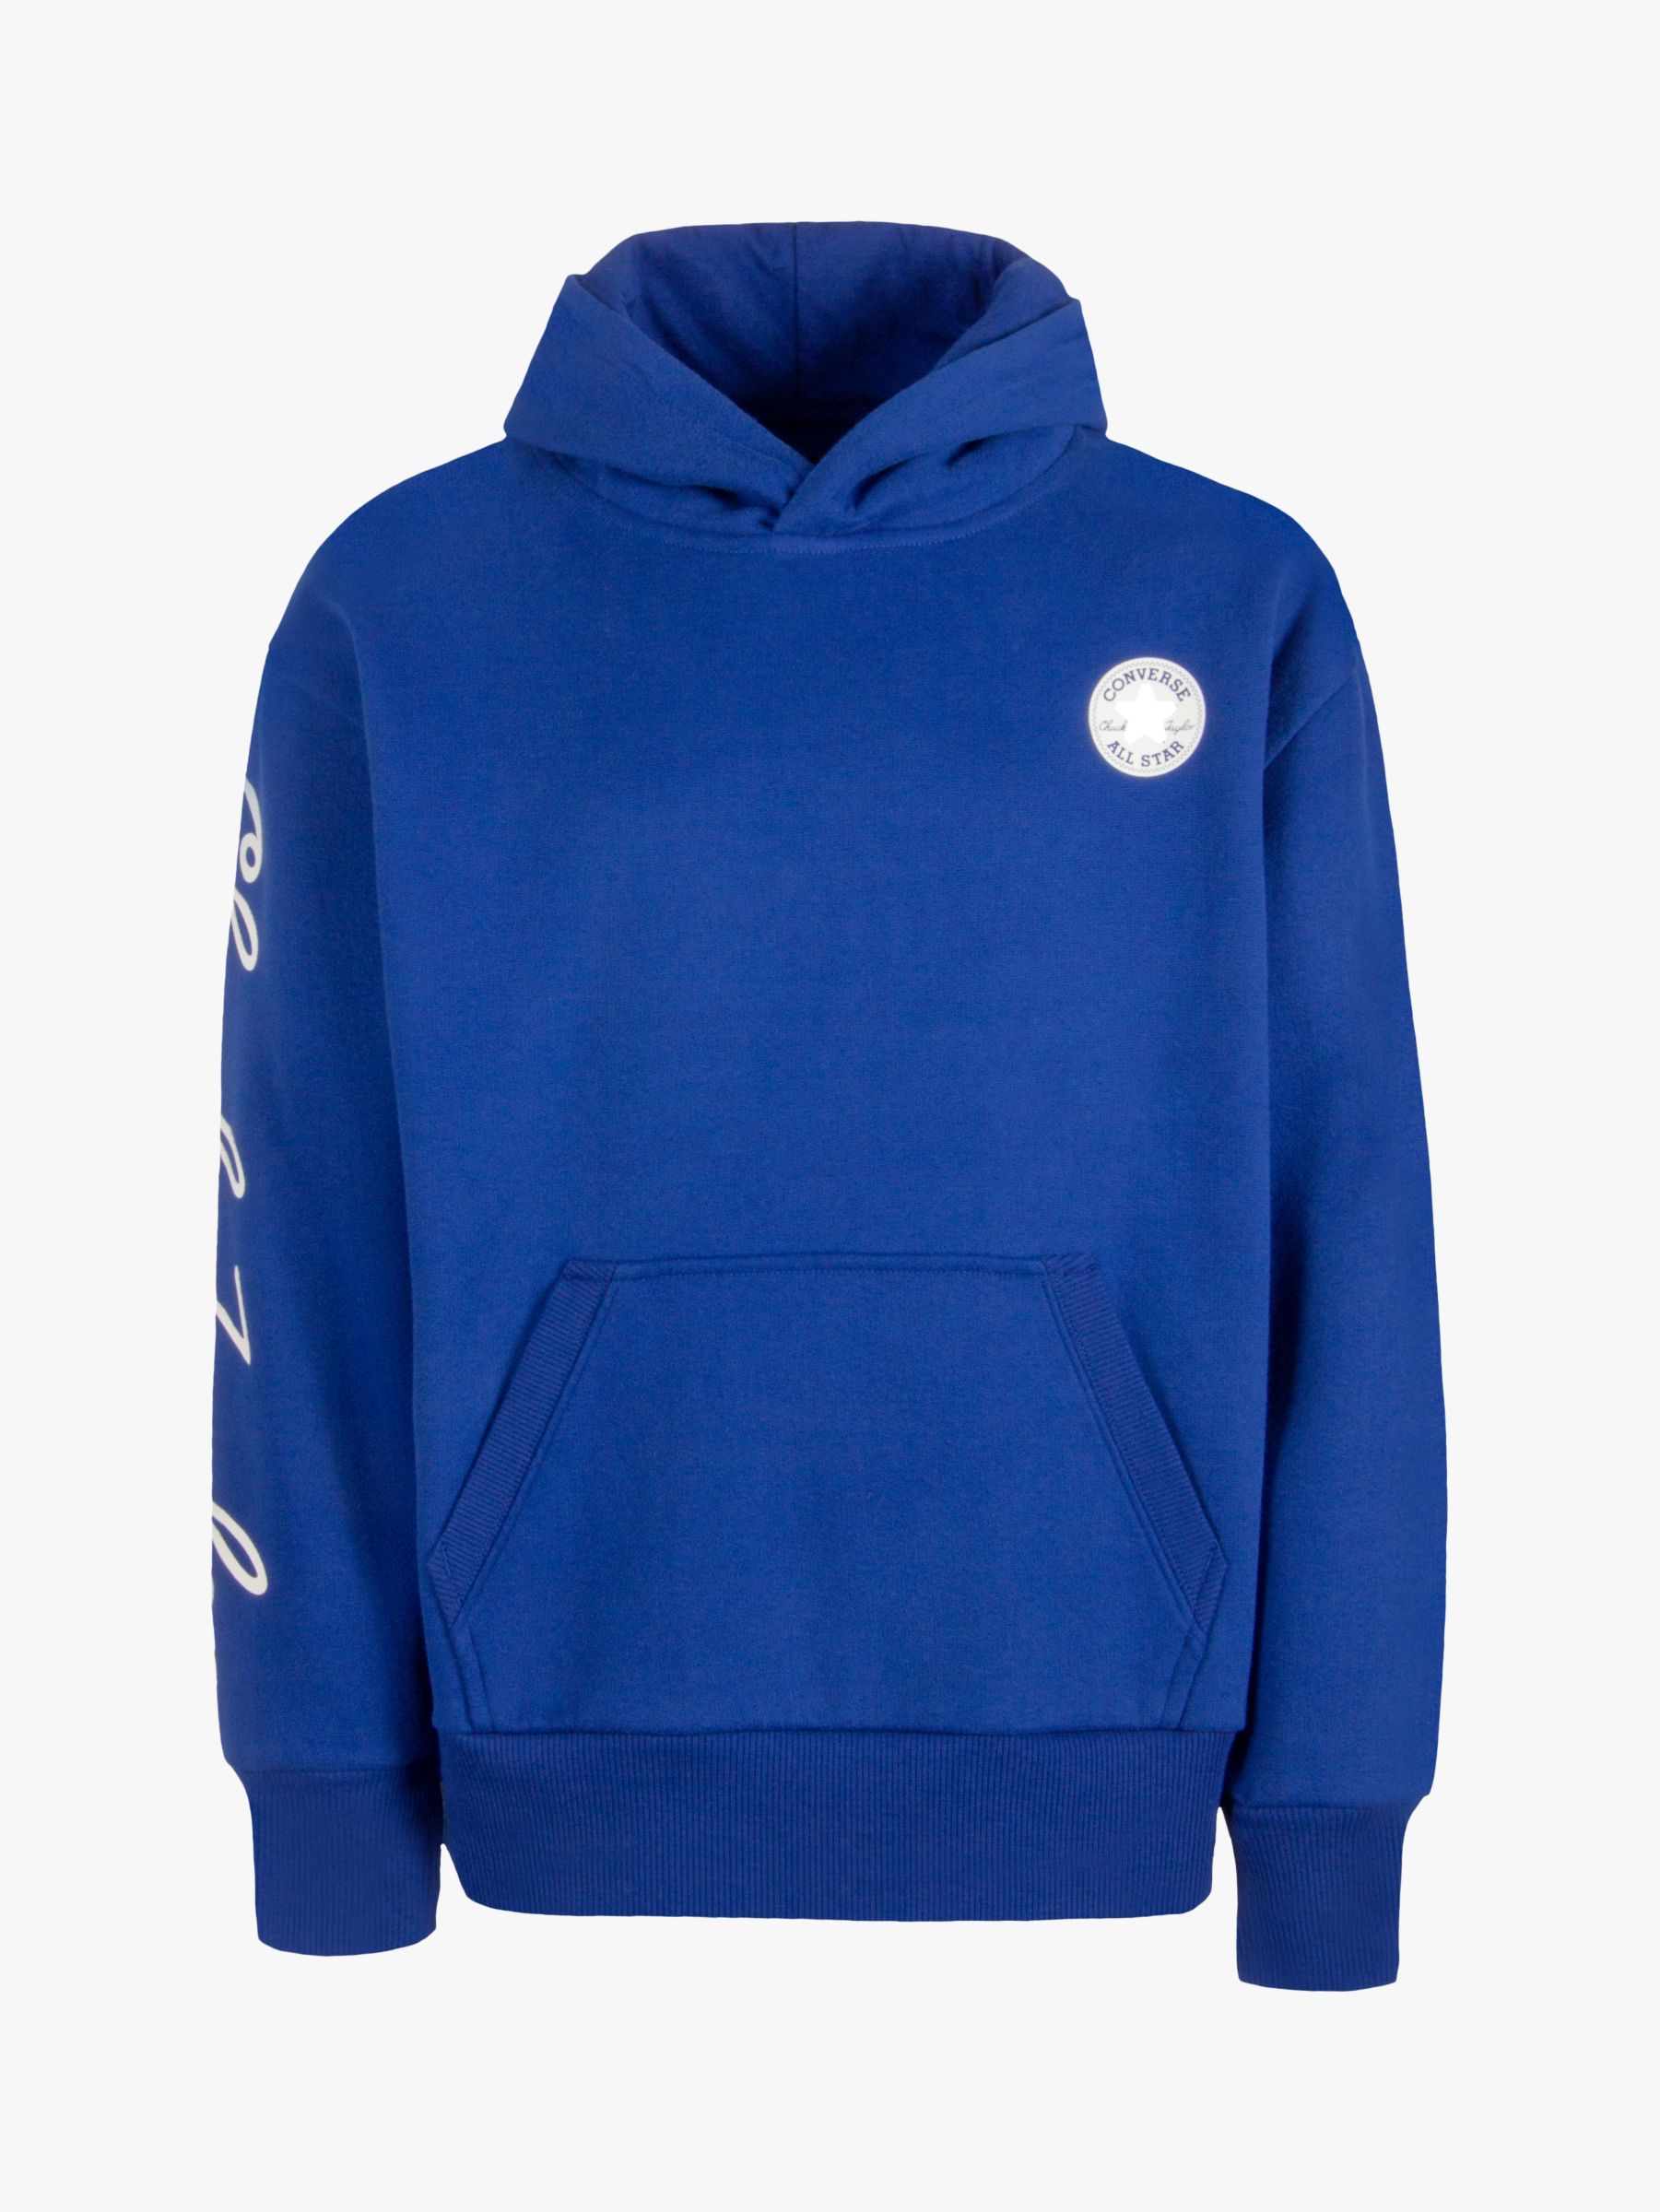 hoodie converse blue